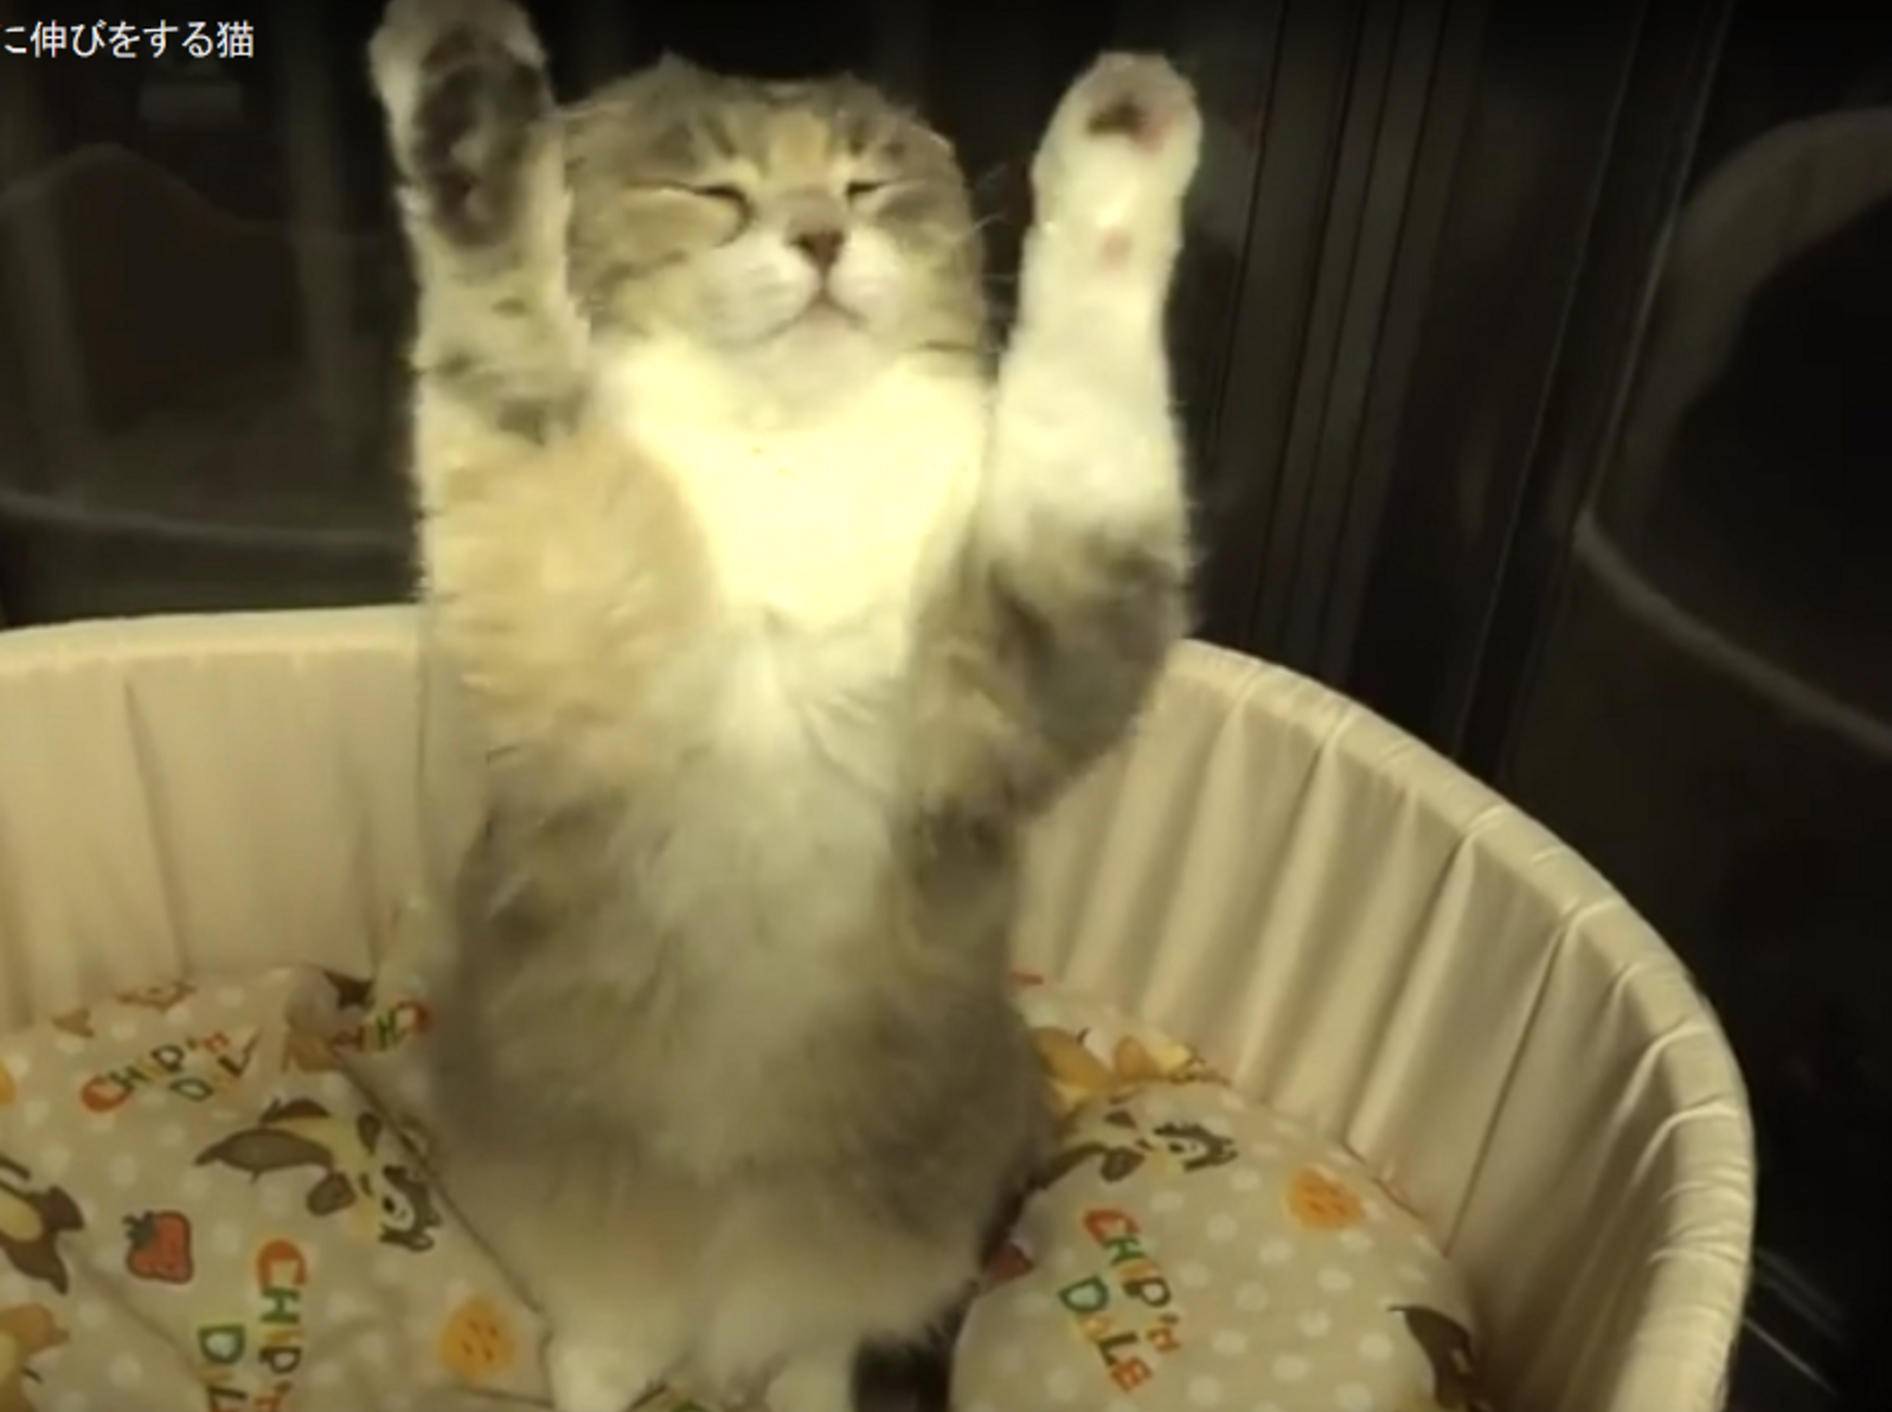 Wie Menschen dehnen und strecken sich diese Katzen – wie gemütlich es aussieht! – YouTube / 10 Cats.